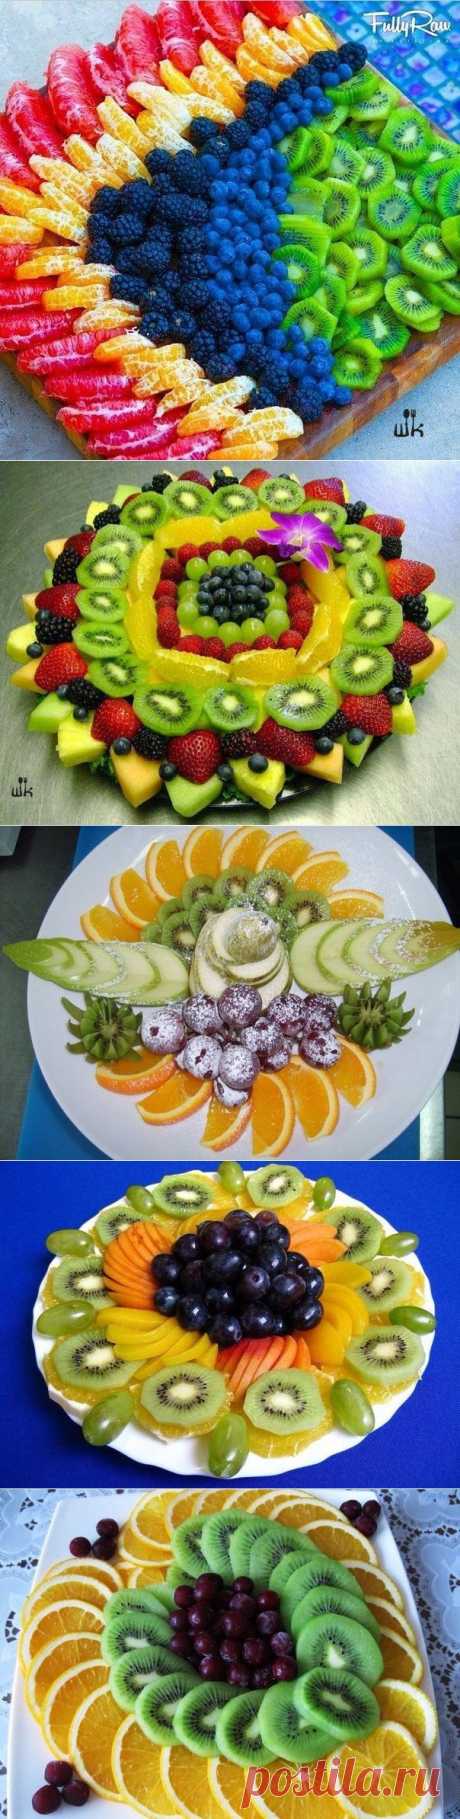 🍇 Красивое оформление фруктовой нарезки на праздничный стол! 🍇